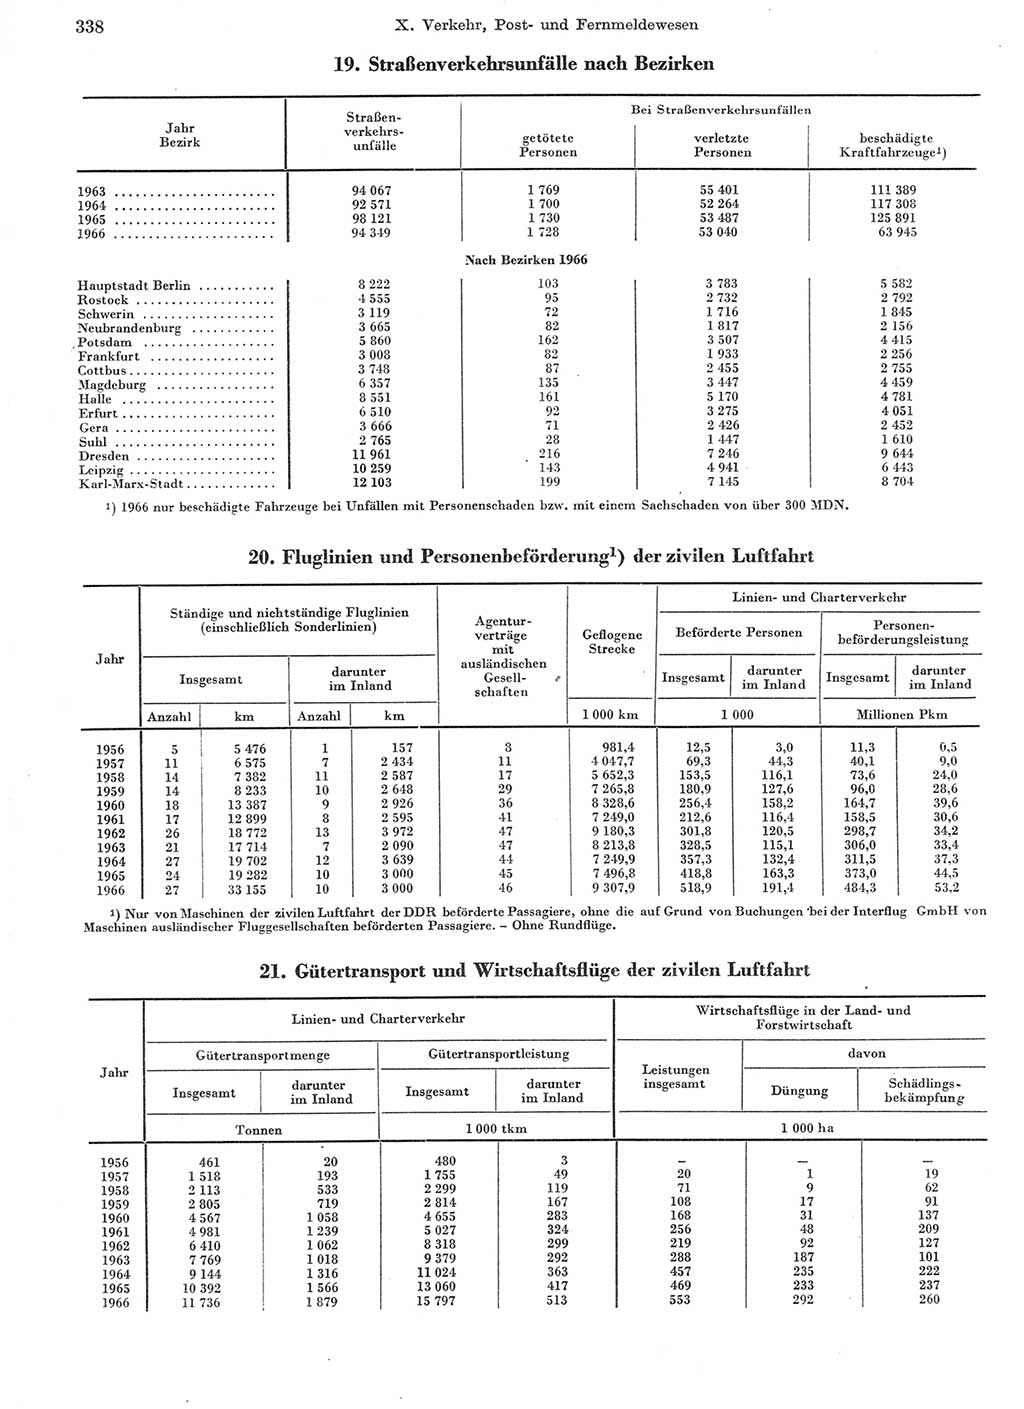 Statistisches Jahrbuch der Deutschen Demokratischen Republik (DDR) 1967, Seite 338 (Stat. Jb. DDR 1967, S. 338)